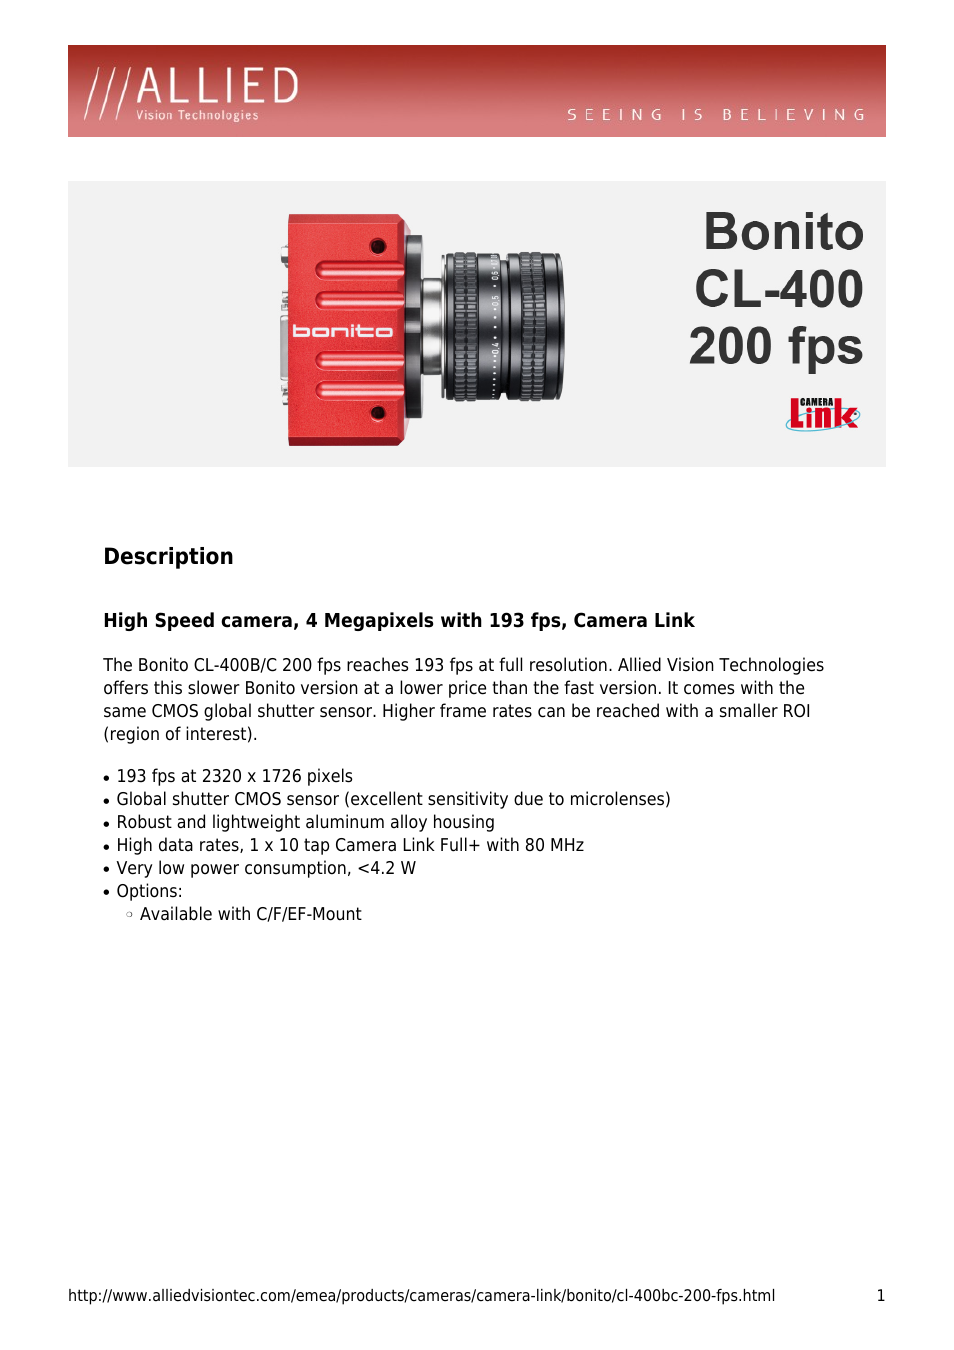 Bonito CL-400 200 fps